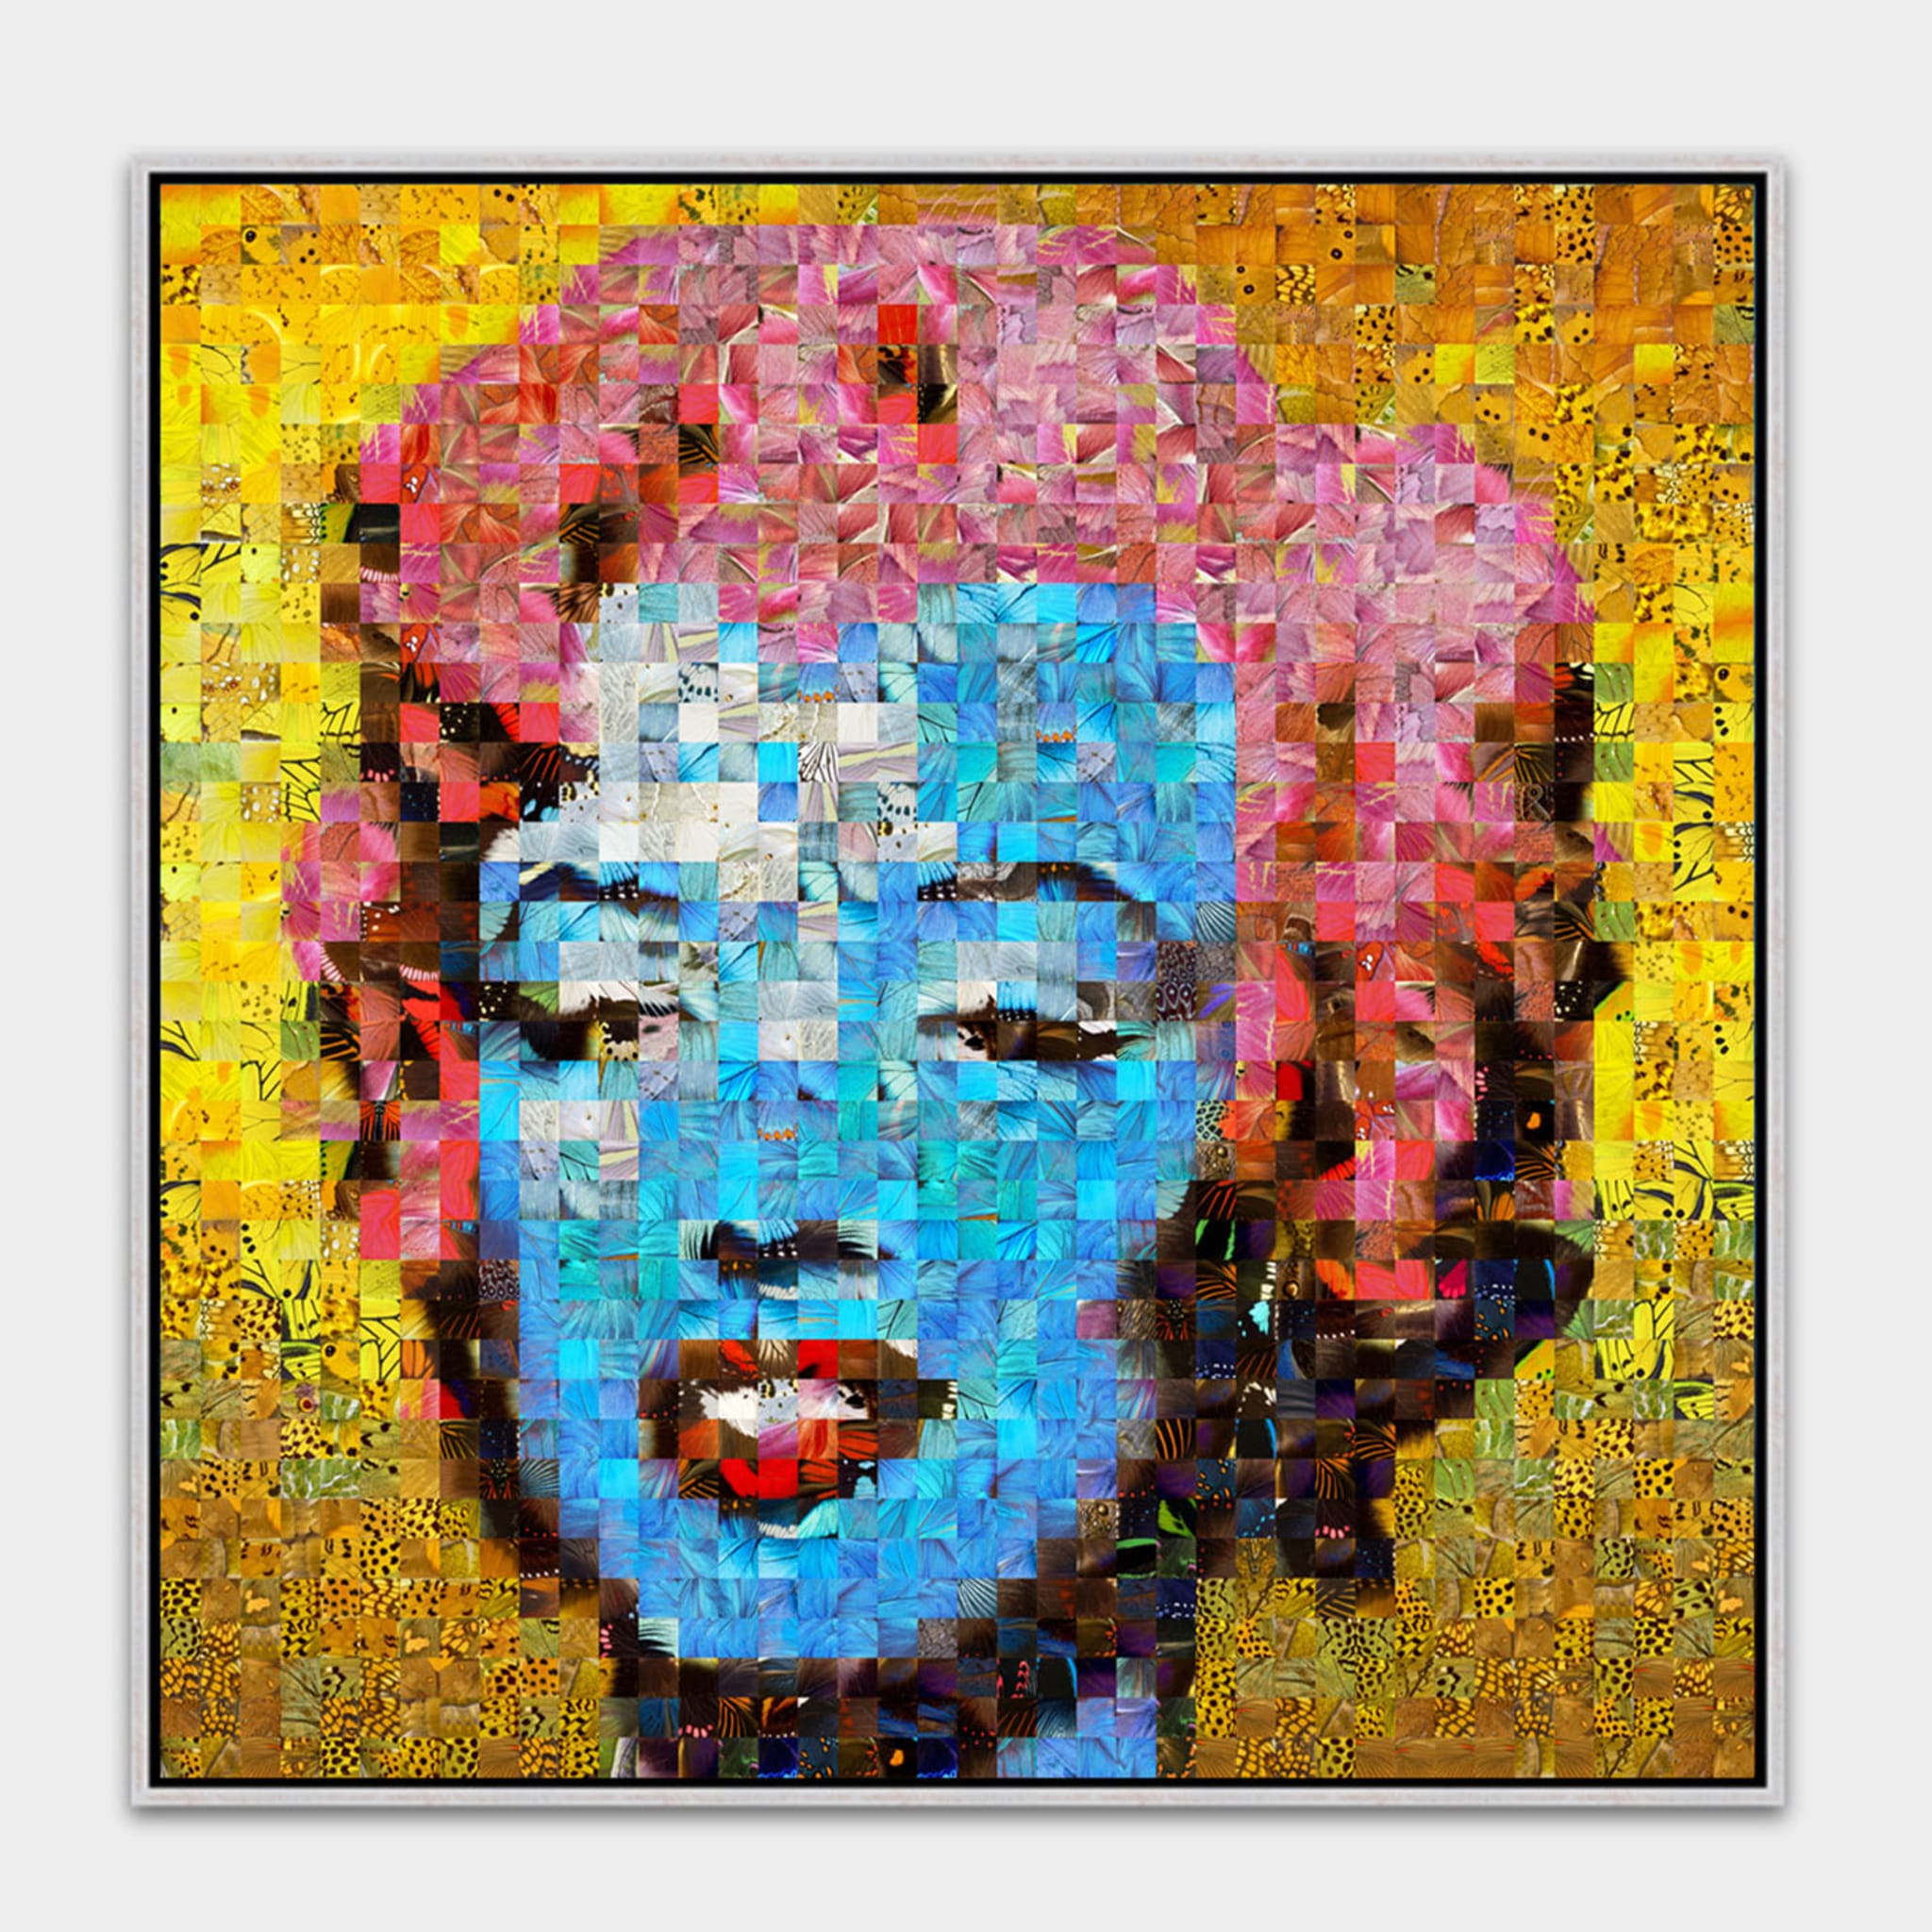 Marilyn n° 3 Puzzling Pop Print Series 2020 - Alternative view 2